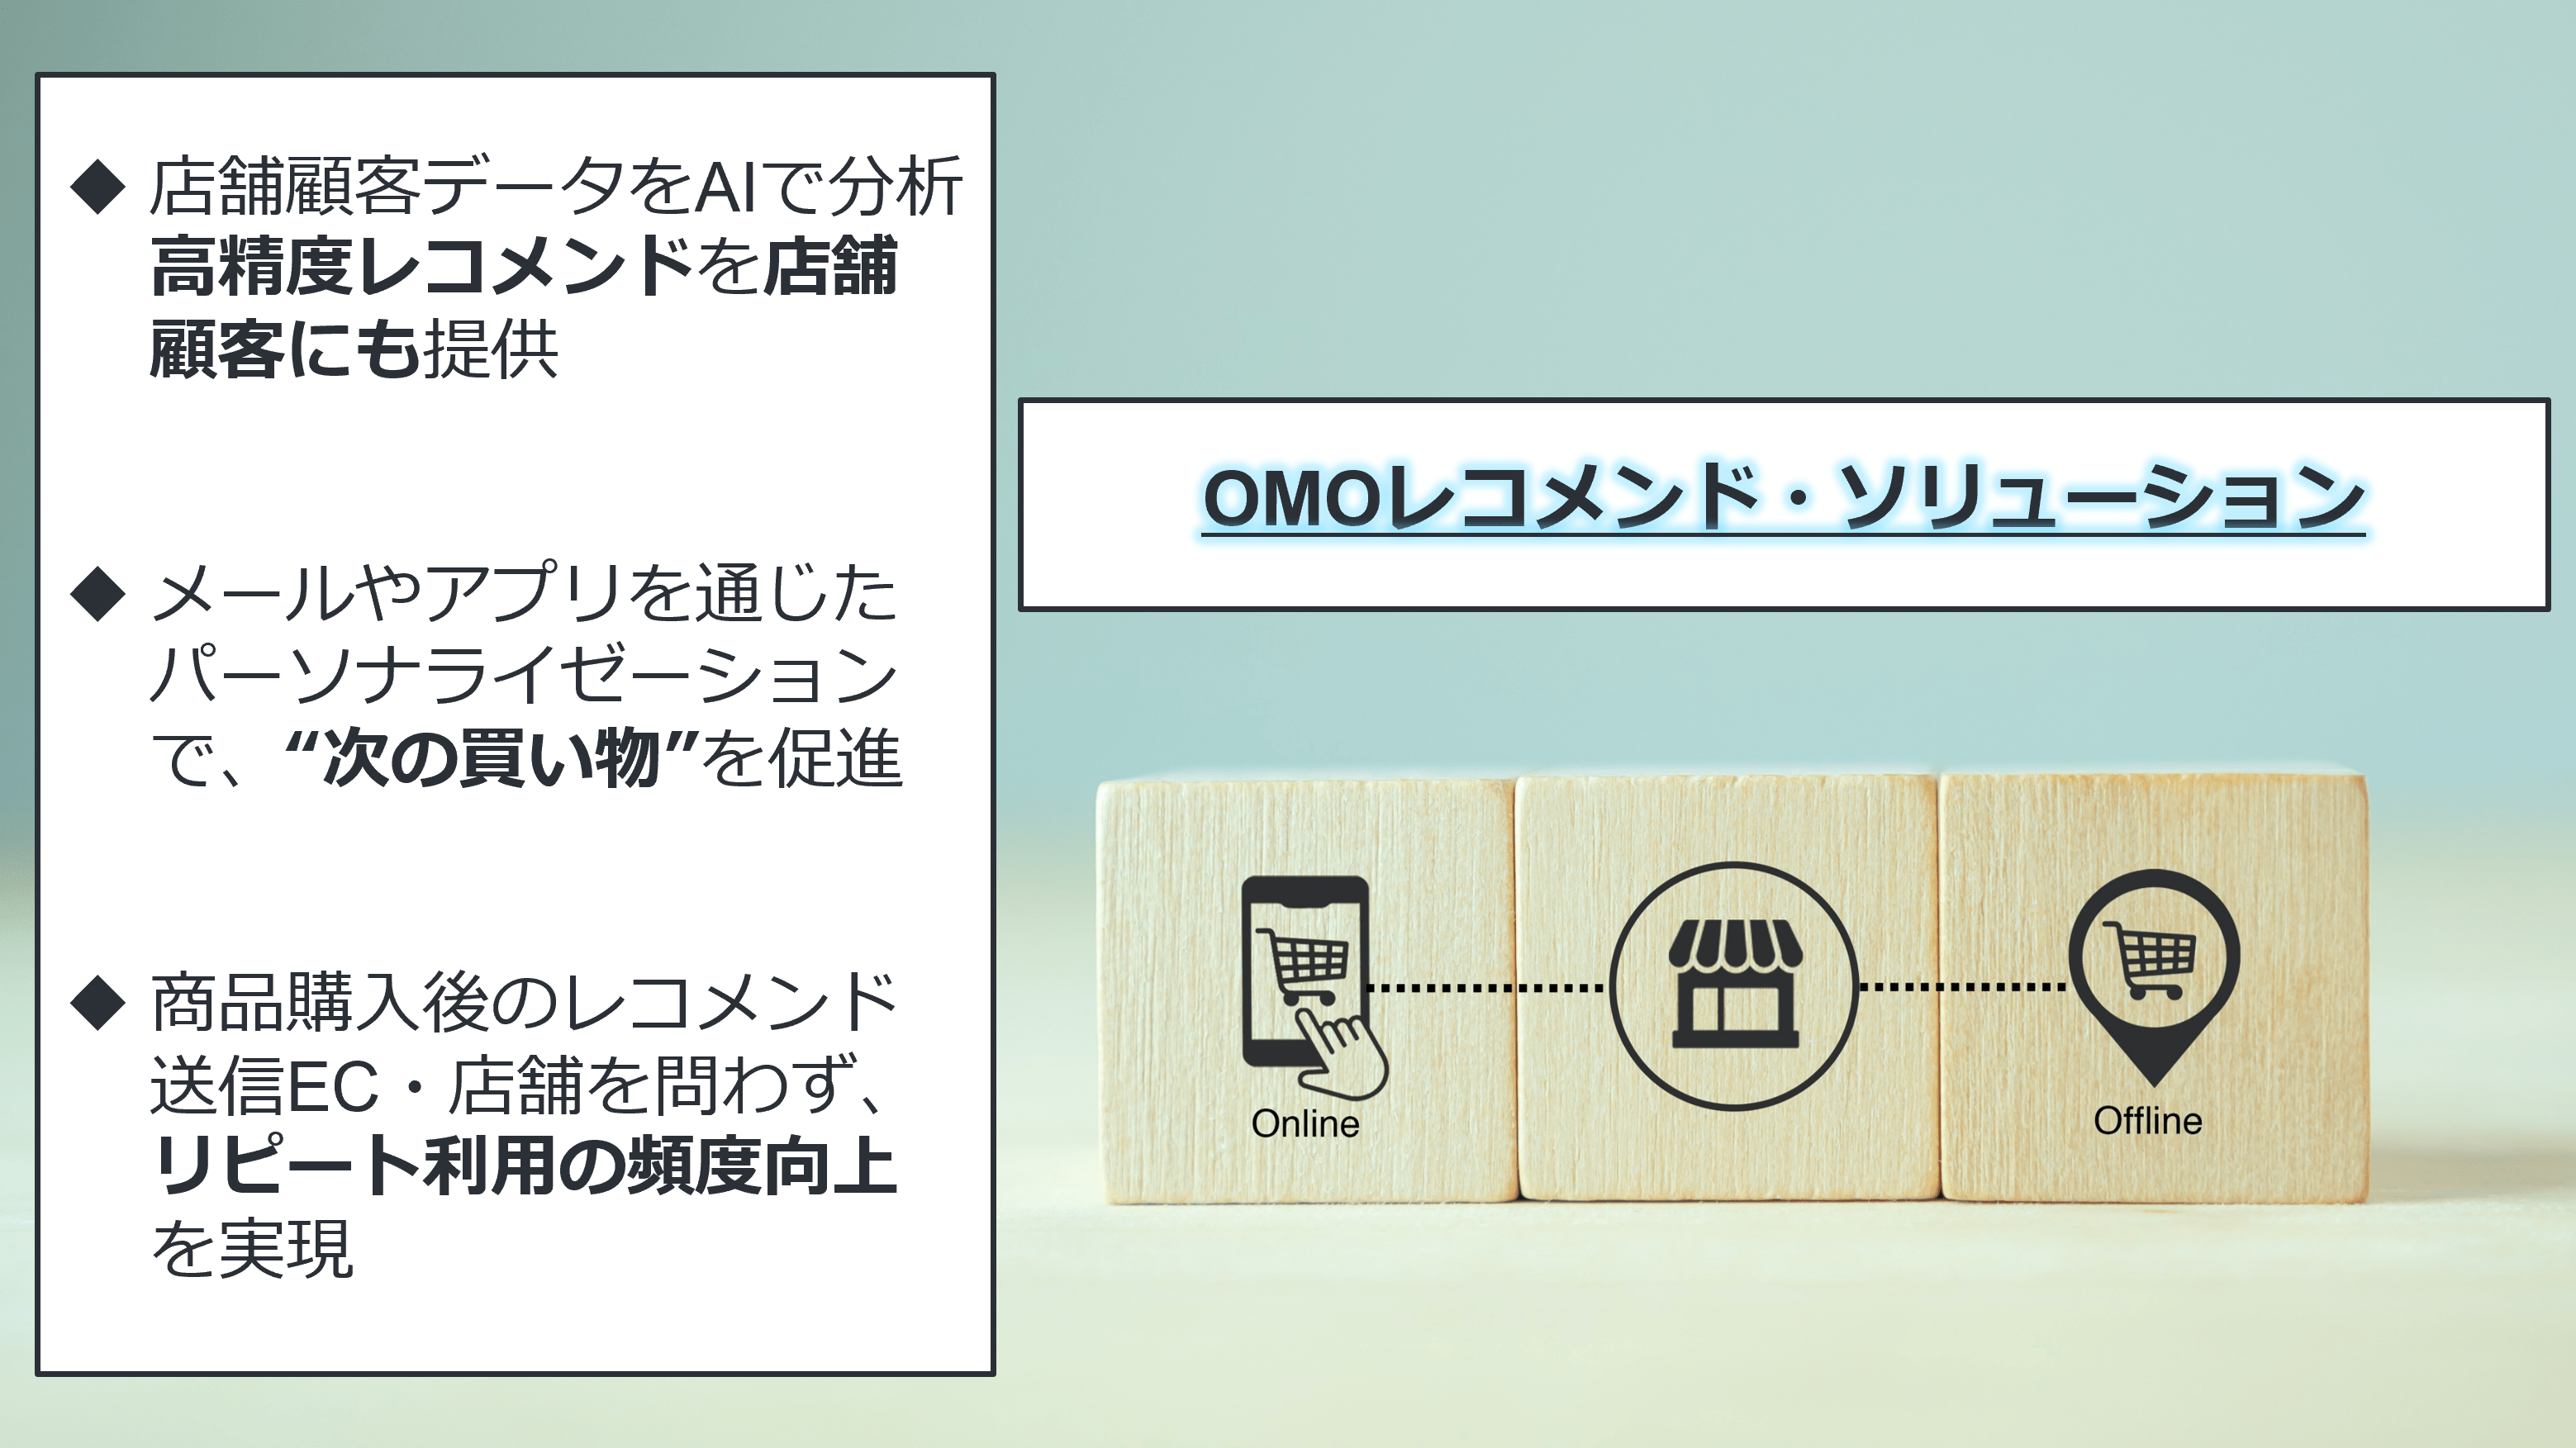 新サービス「OMOレコメンド・ソリューション」の提供を開始